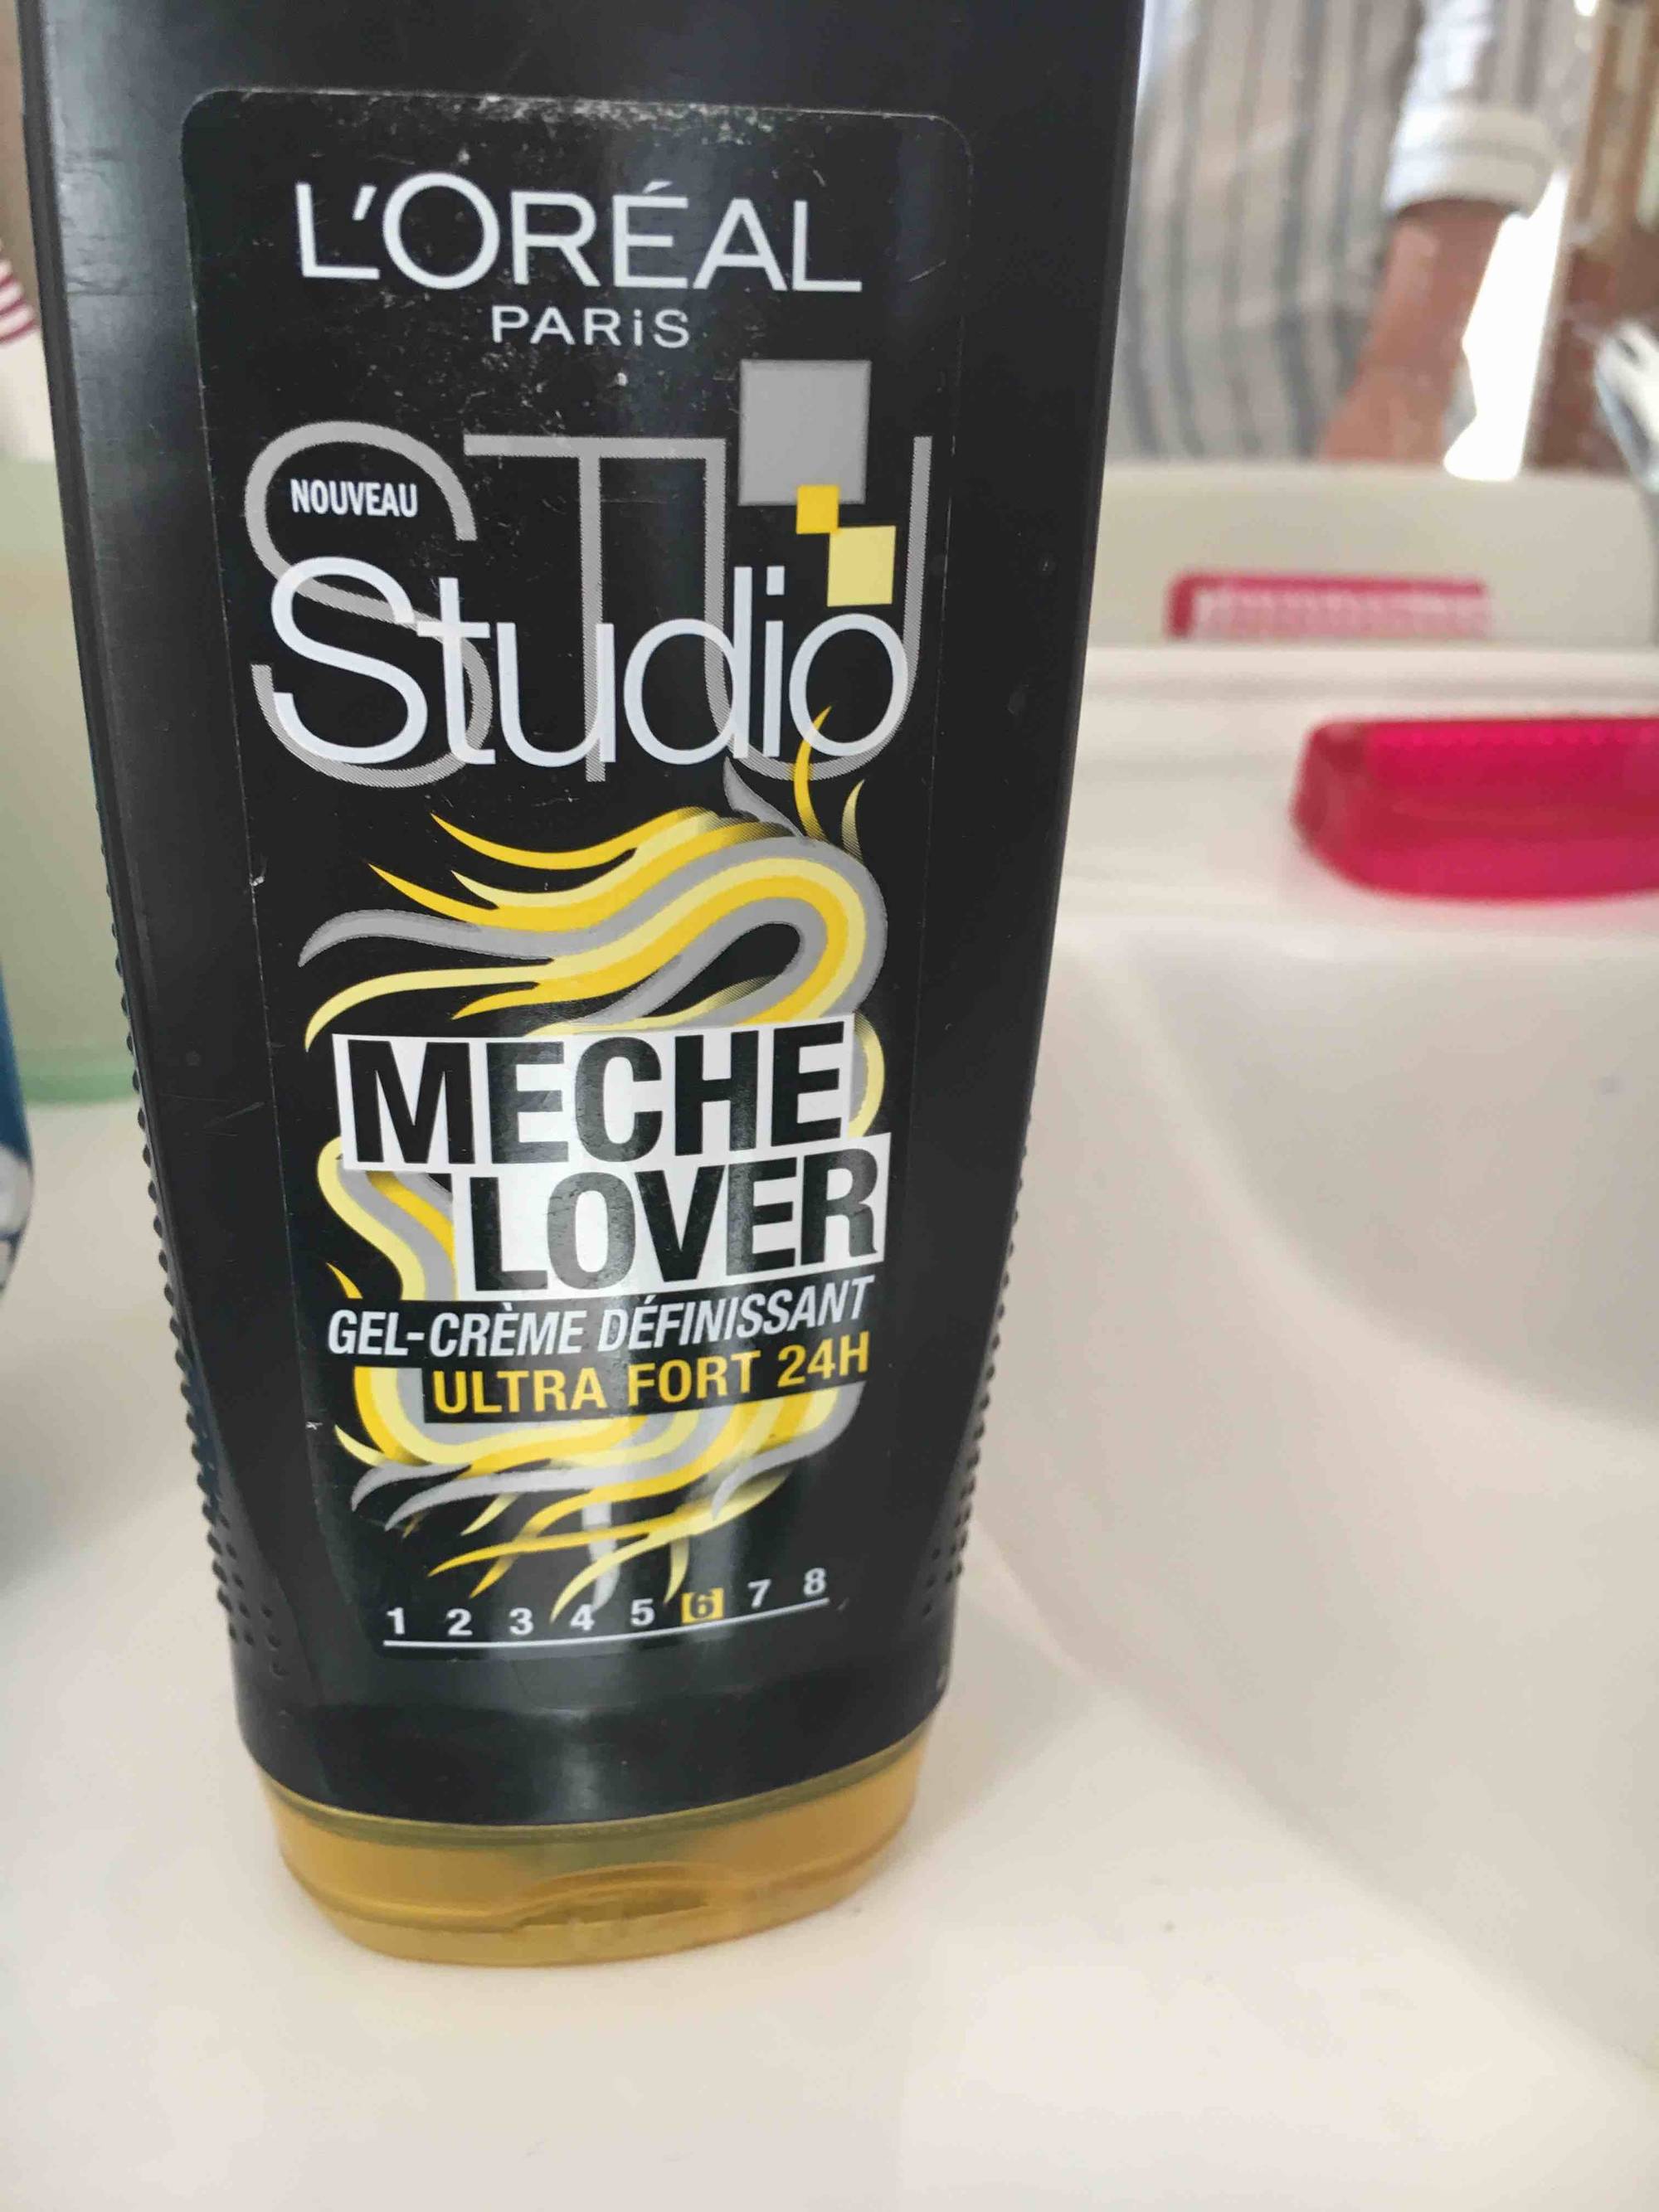 L'ORÉAL - Studio Mèche Lover - Gel-crème définissant